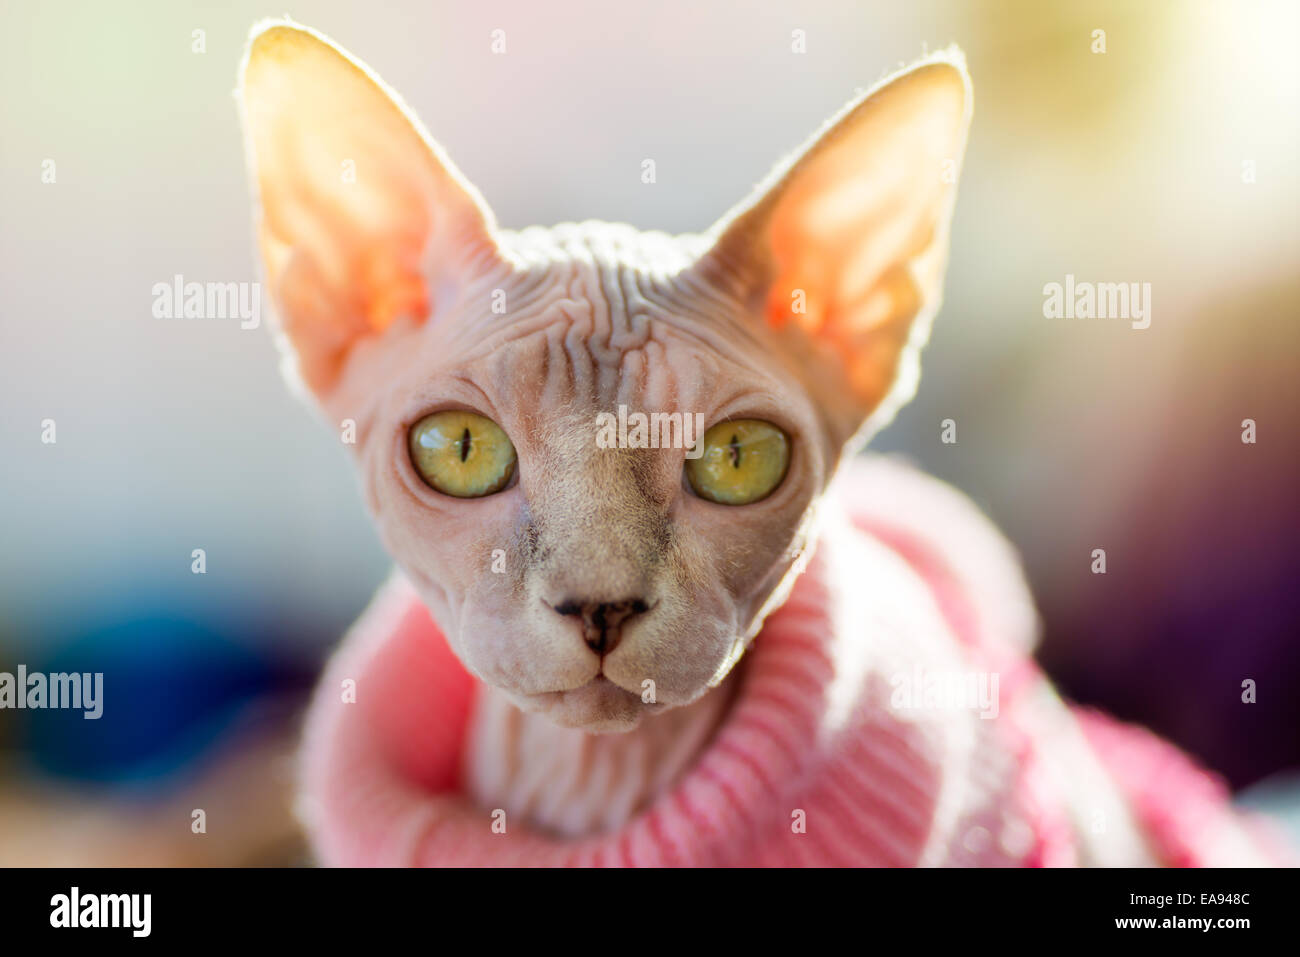 Animali: Sphynx gatto rosa da indossare pullover, sole che splende attraverso le orecchie, luce solare effetto aggiunto, close-up shot, backgroun sfocata Foto Stock